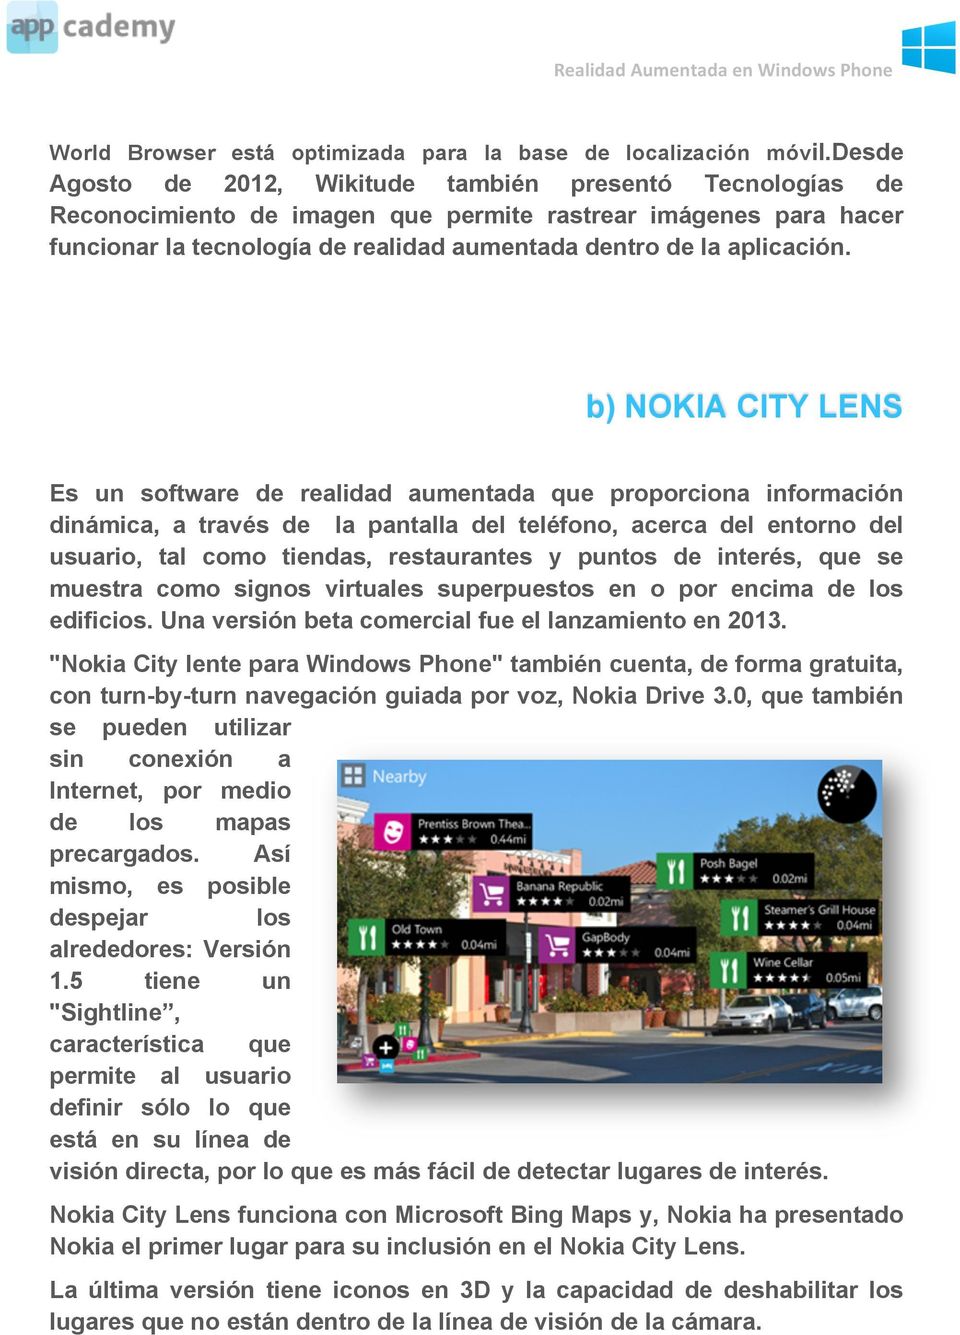 b) NOKIA CITY LENS Es un software de realidad aumentada que proporciona información dinámica, a través de la pantalla del teléfono, acerca del entorno del usuario, tal como tiendas, restaurantes y